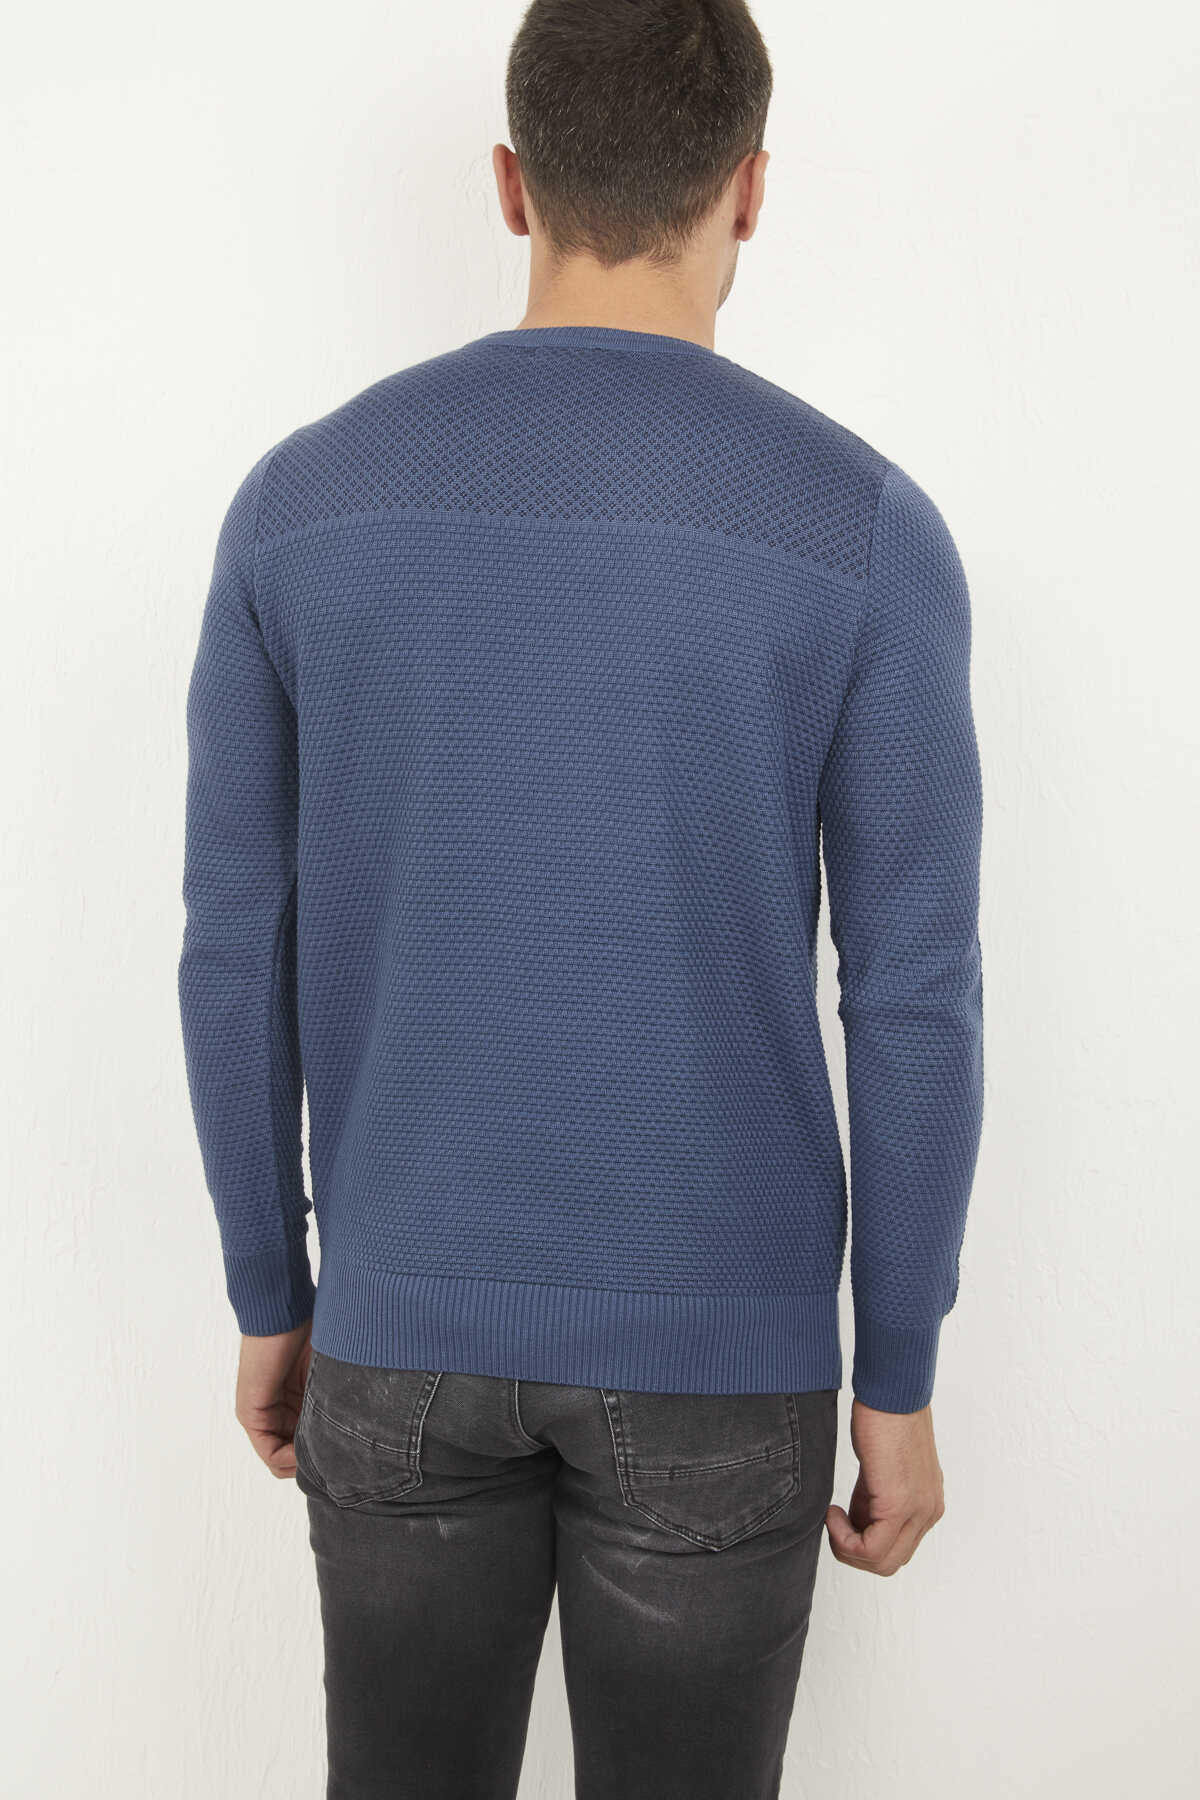 Round Neck Indigo Knitwear Sweater | Voltaj